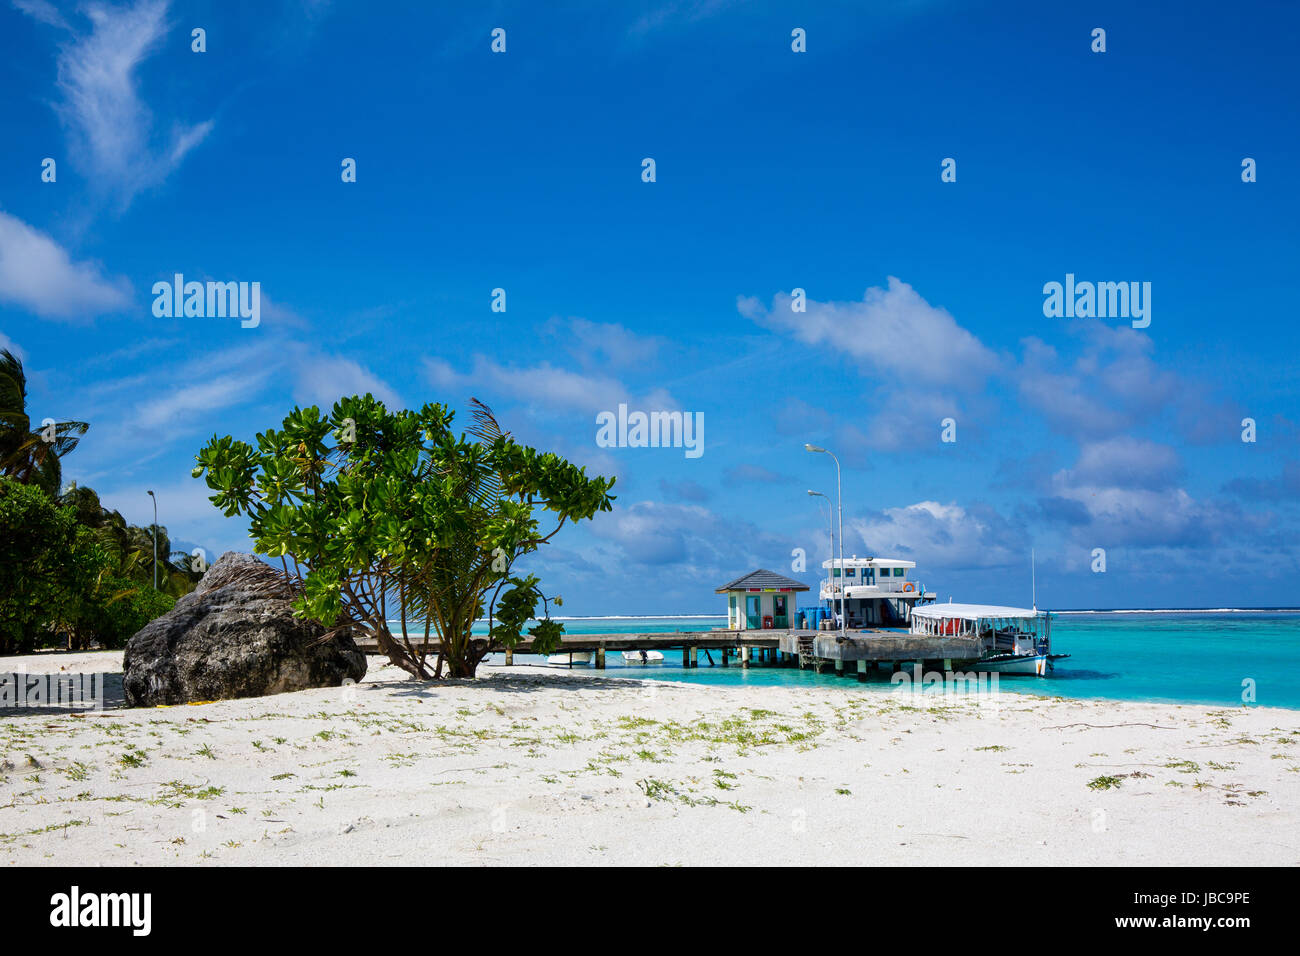 Imbarcazione attraccata ad un molo su un isola delle vacanze alle Maldive. Polvere di sabbia bianca e la lussureggiante vegetazione verde. la locale scuola di immersione opera da questo getto. Foto Stock